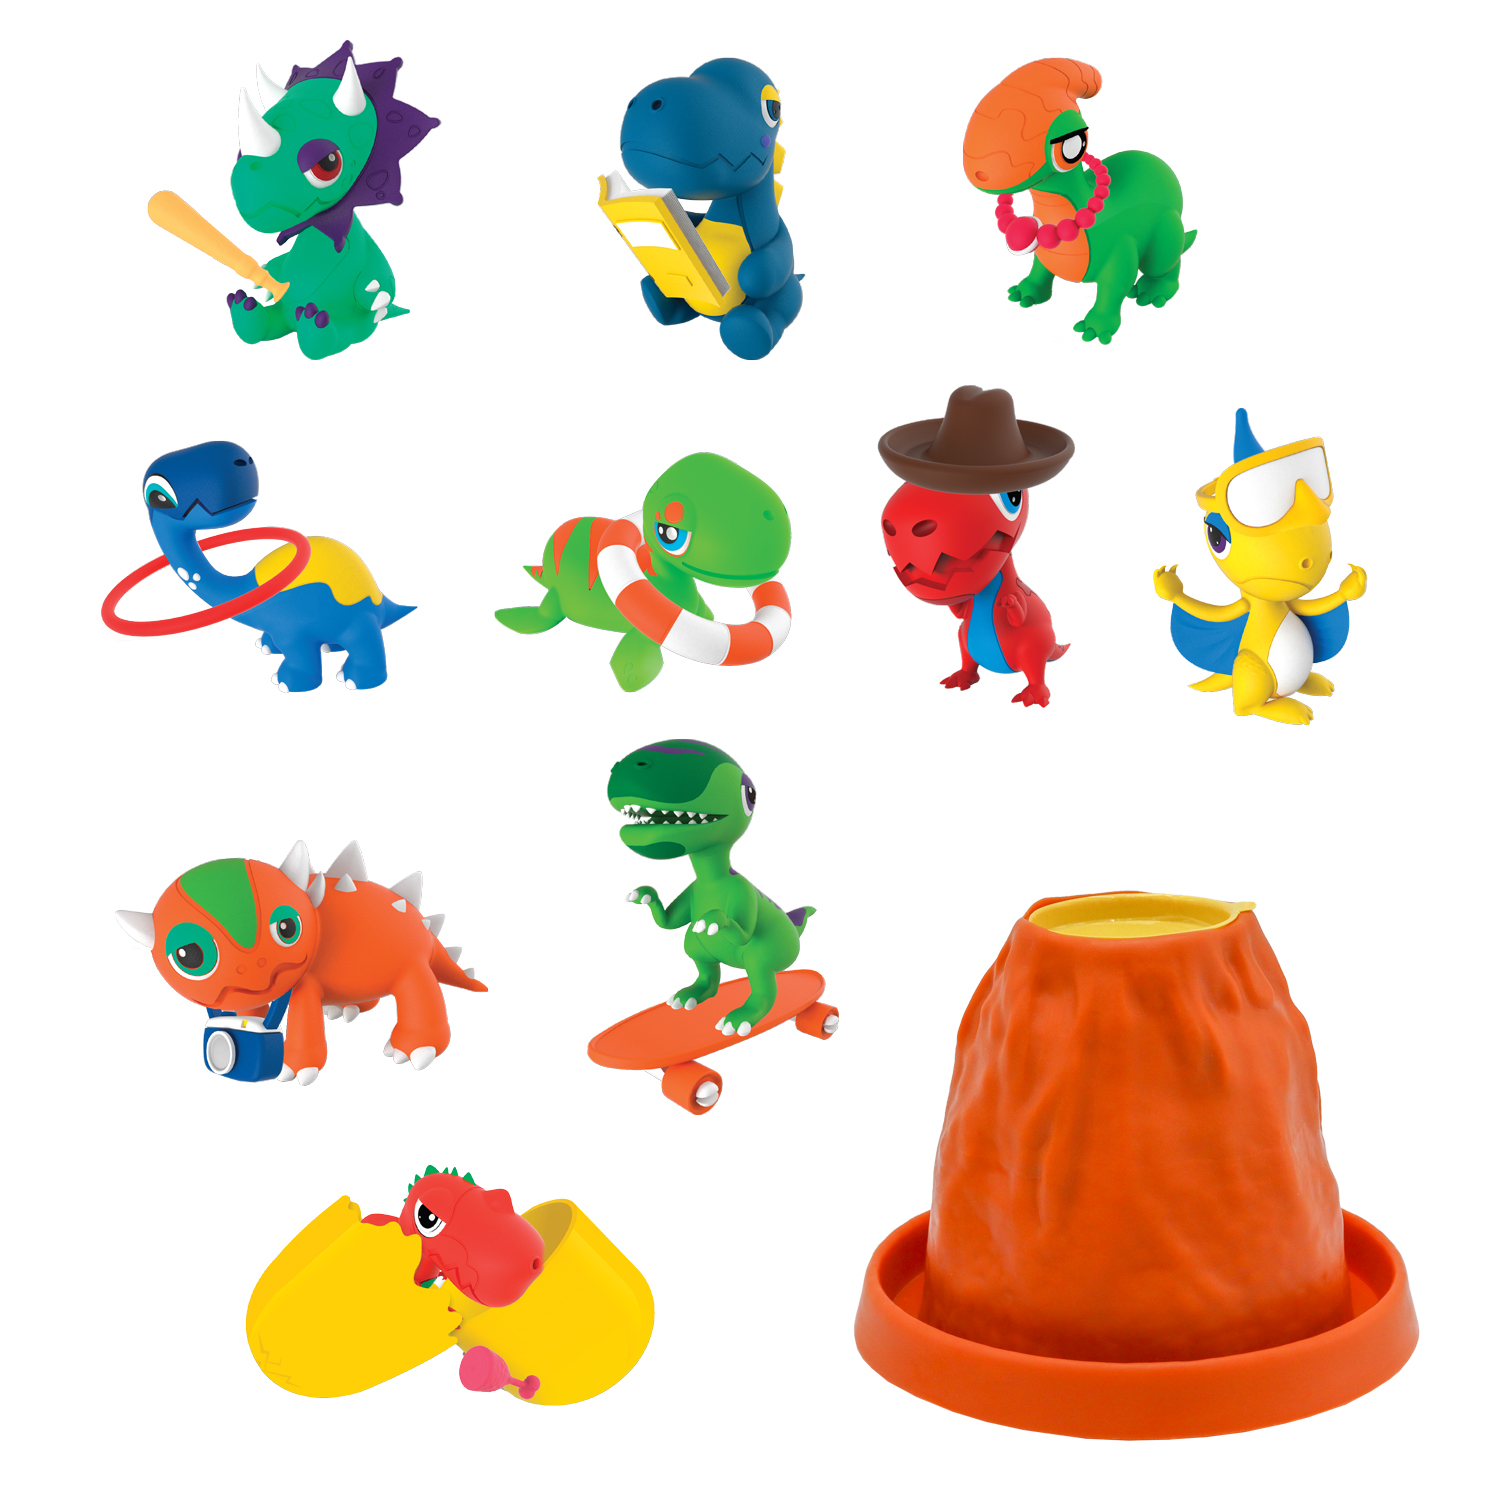 Коллекционная фигурка Crazy Dino-сюрприз динозавра в вулкане Volcano, 10 героев, CD04 набор для творчества crazy slime слайм и игрушка пони в пакете